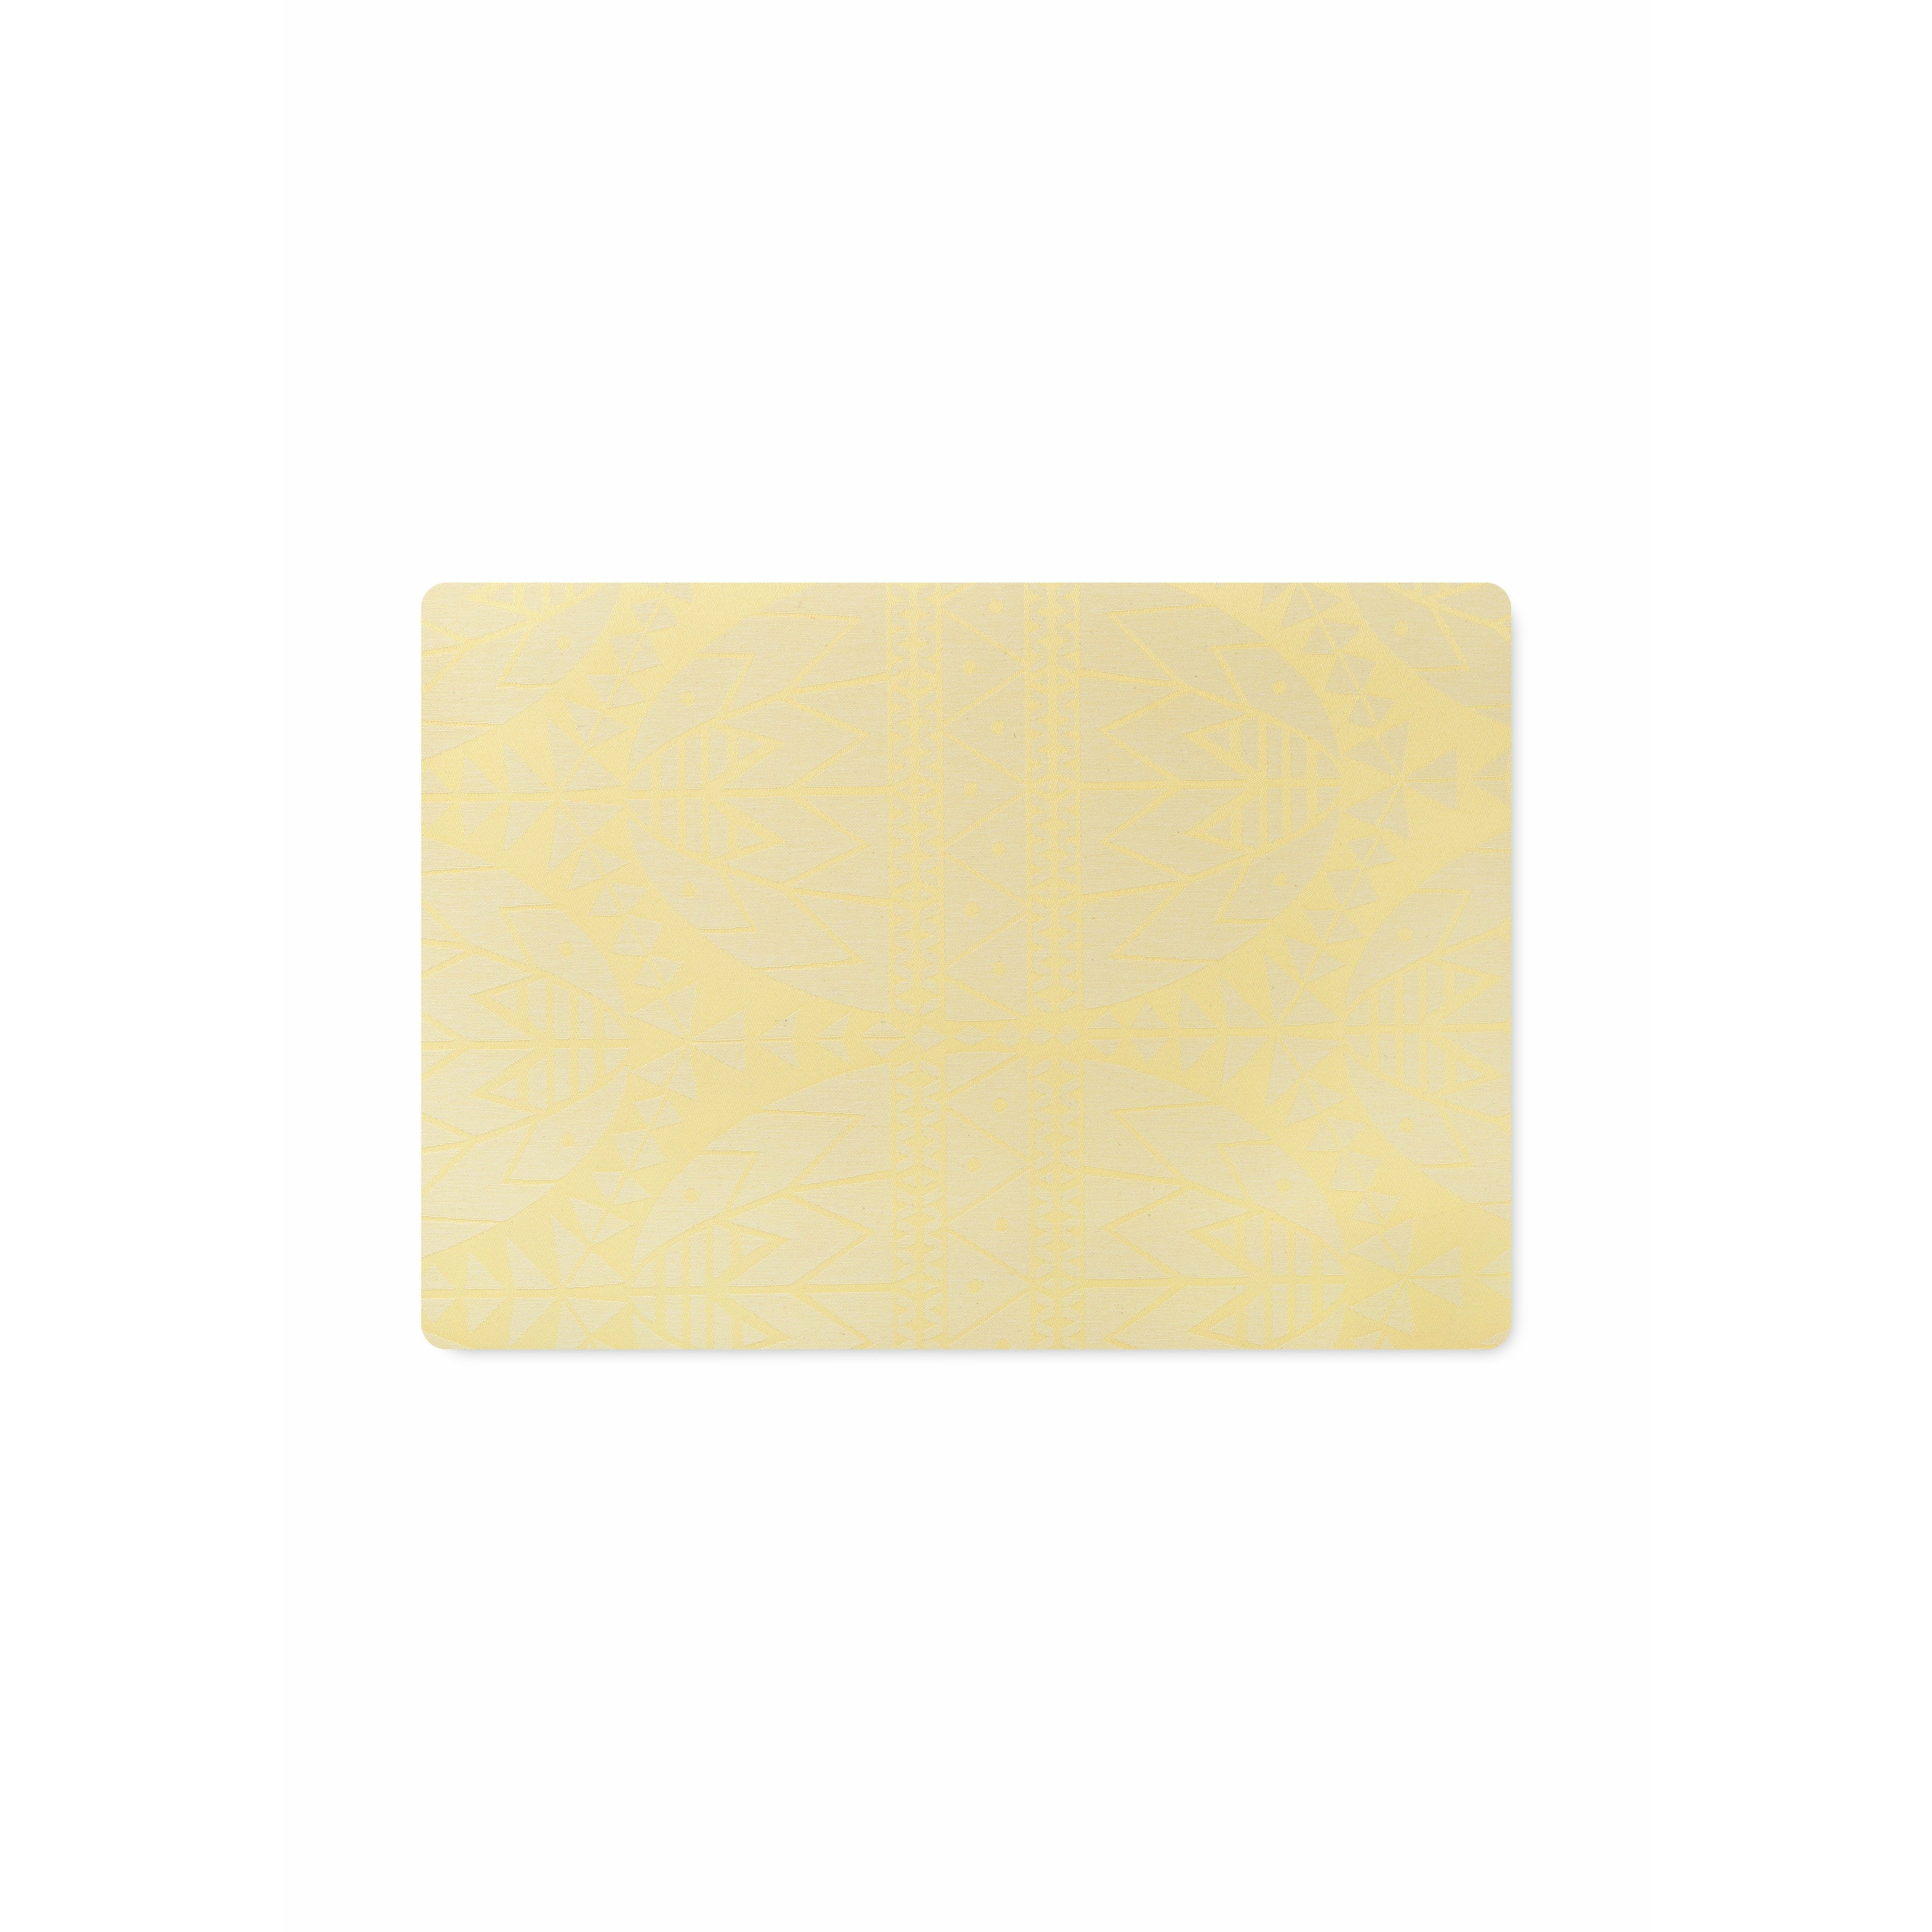 Juna Ostern Tischemat 43x30 cm, gelb